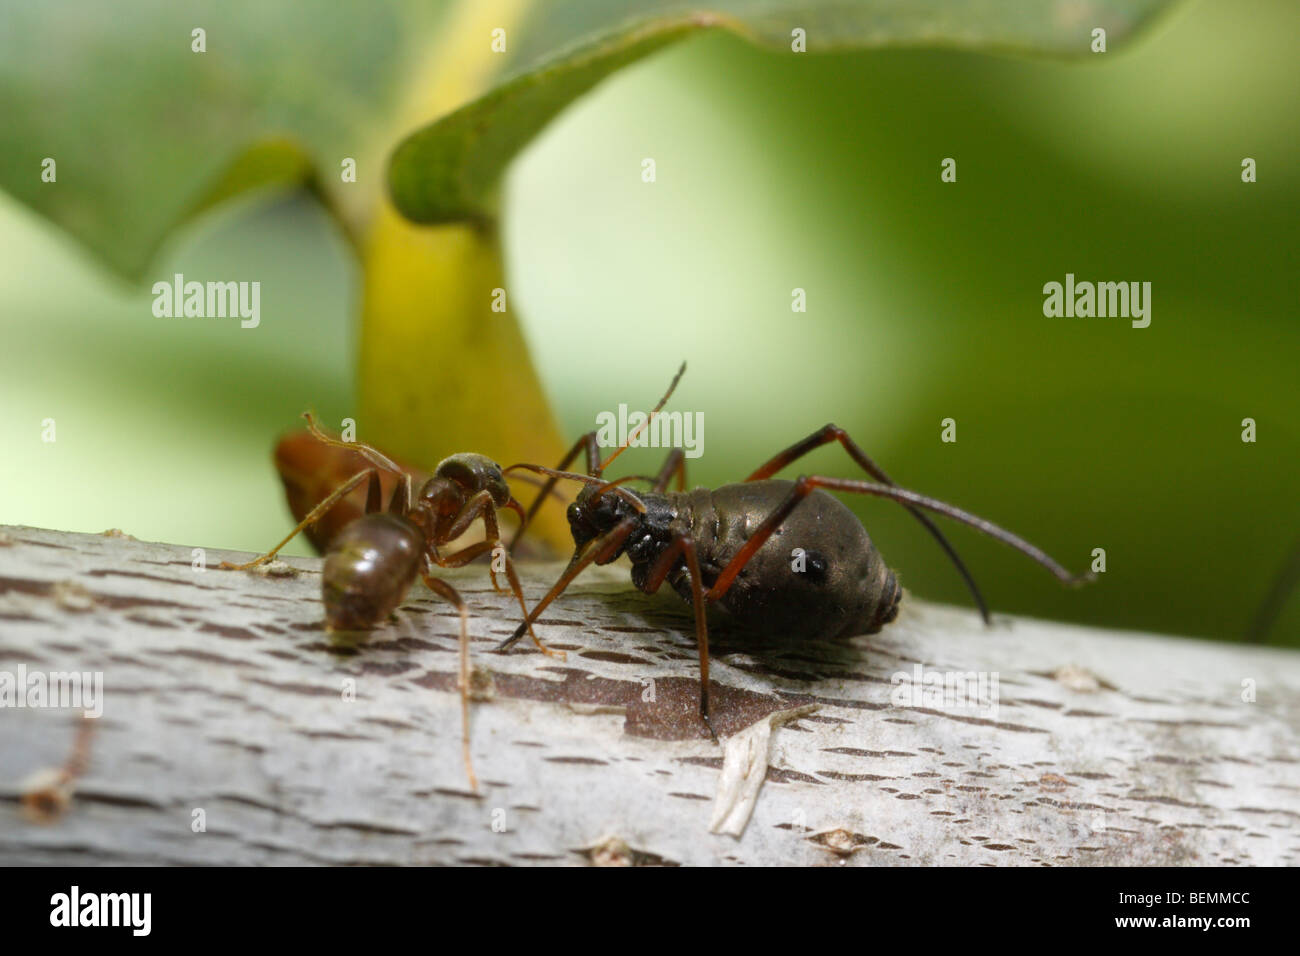 Un áfido Lachnus roboris, que se alimenta de roble. Una hormiga negra de jardín (Lasius niger) tiende al pulgón. Foto de stock